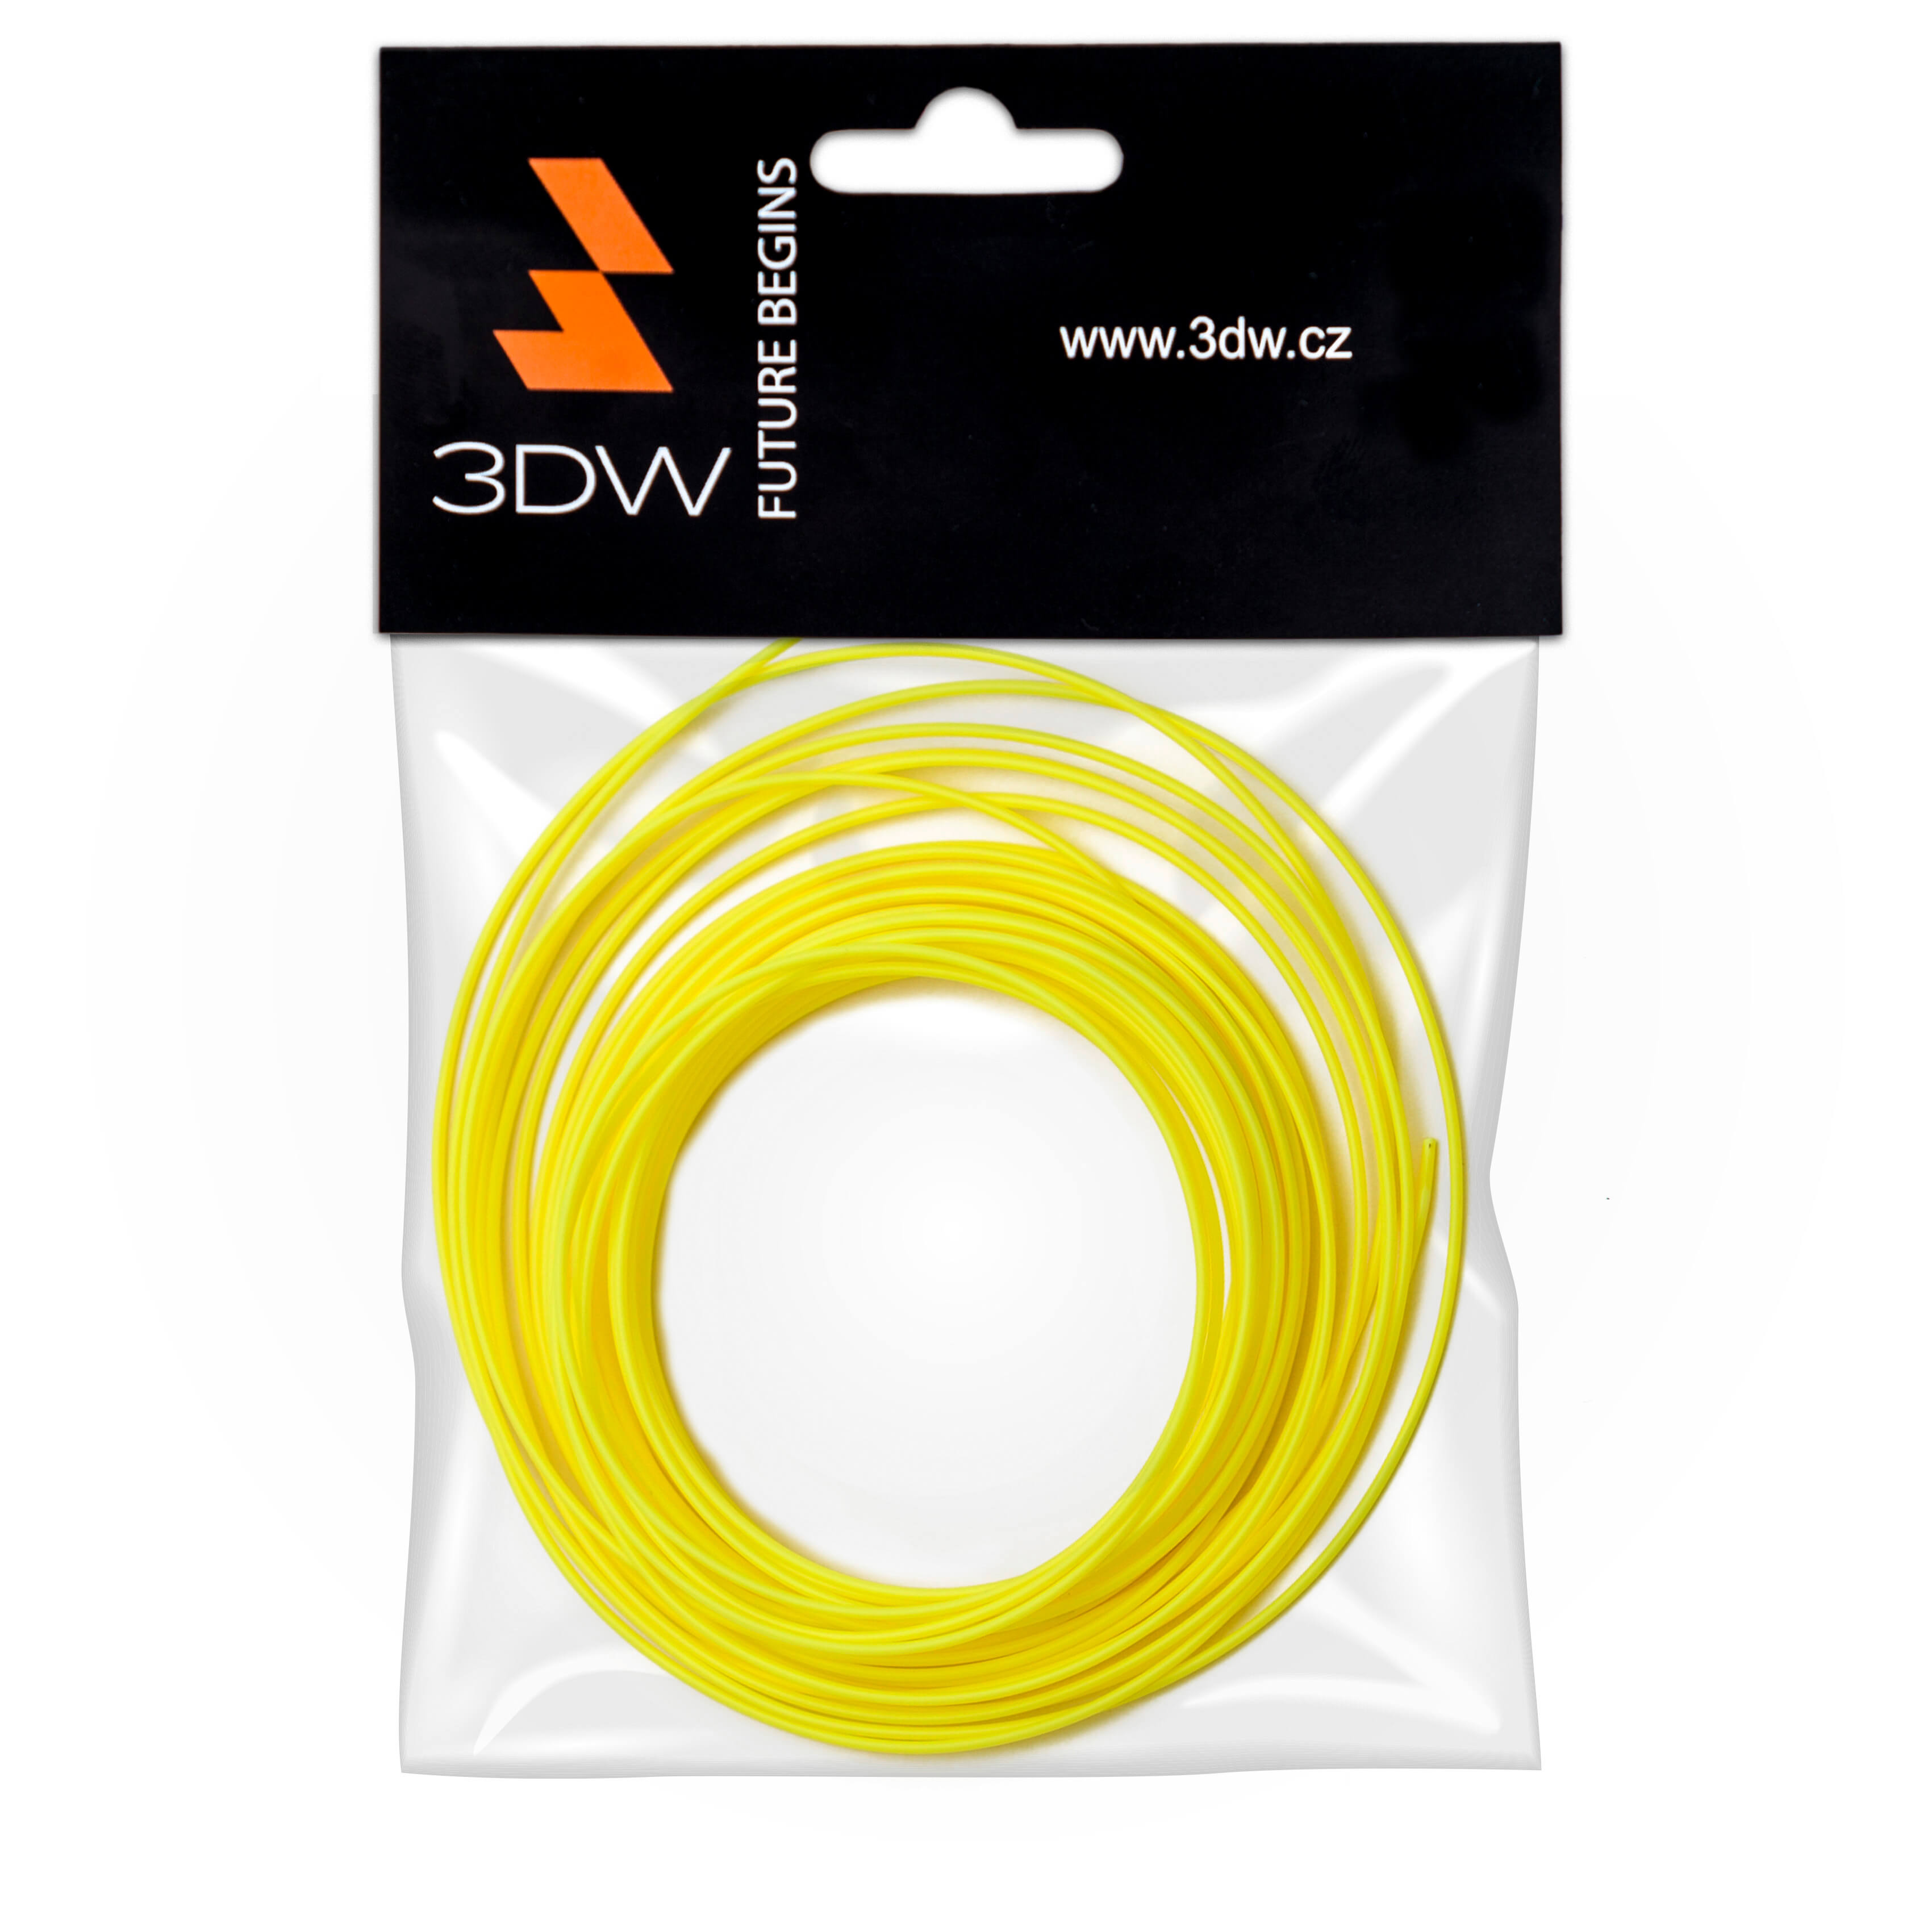 Tisková struna 3DW (filament) HiPS, 1,75mm, 10m, žlutá, 200-230°C